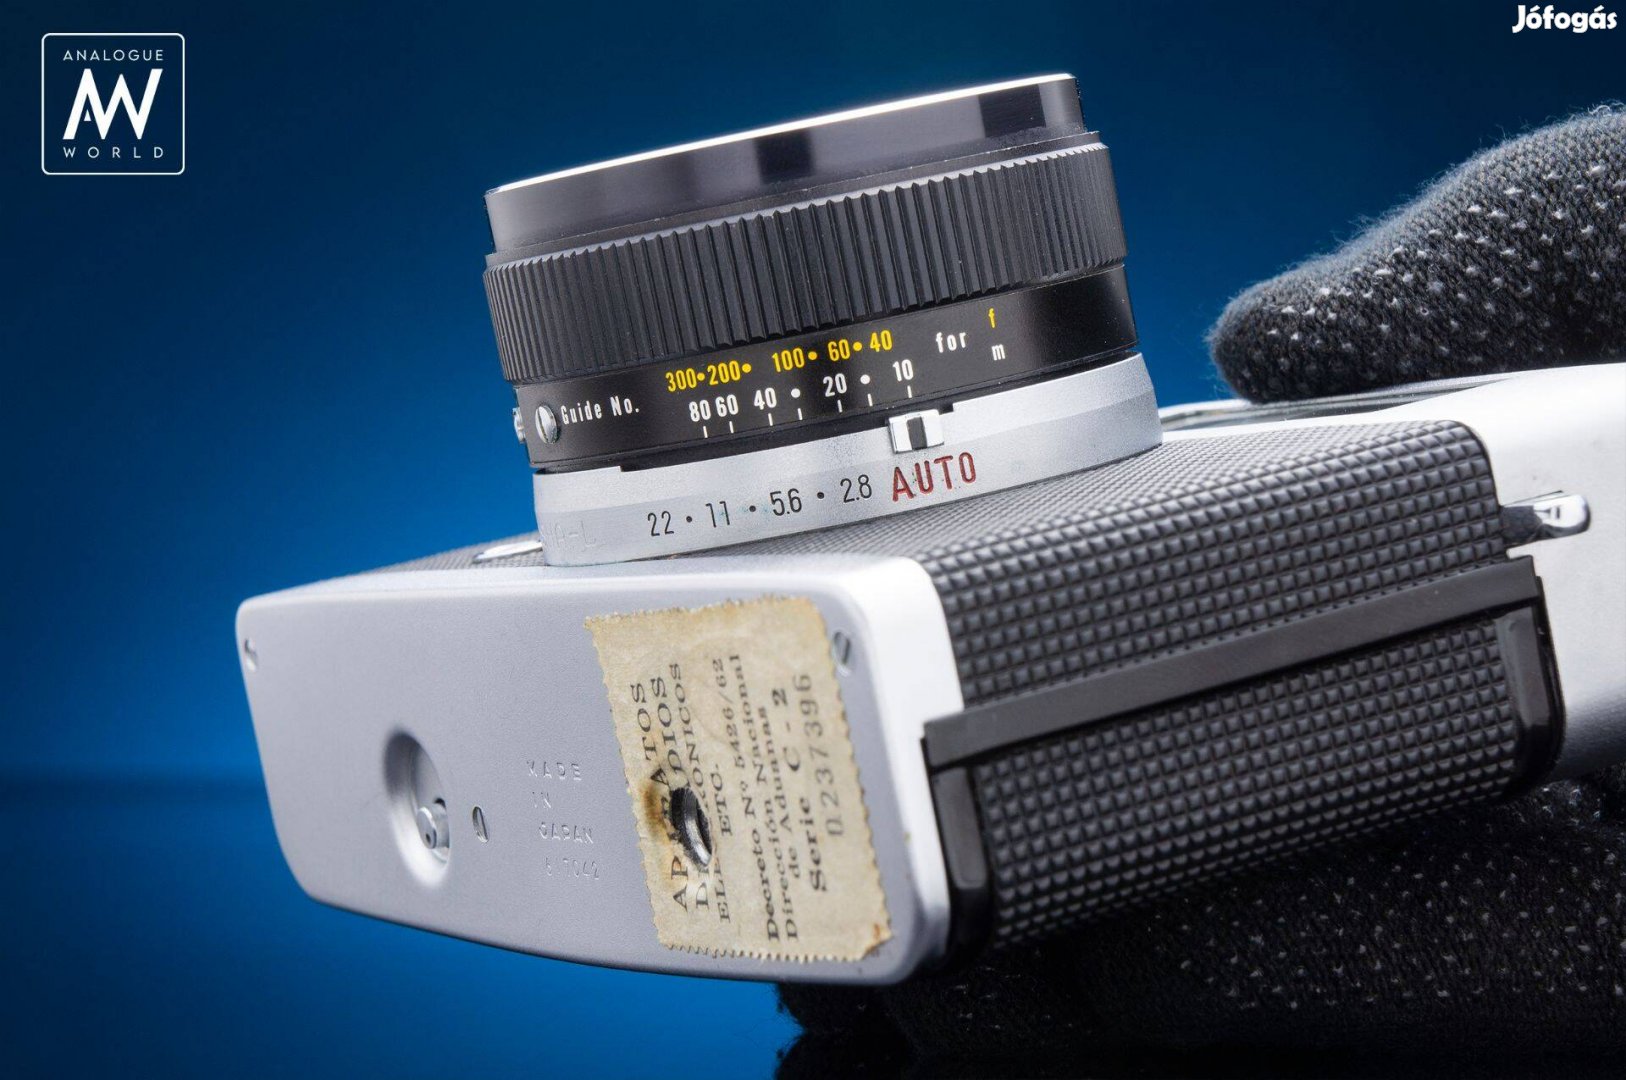 Konica EE Matic | Tesztelt Retro Filmes Rangefinder Fényképezőgép